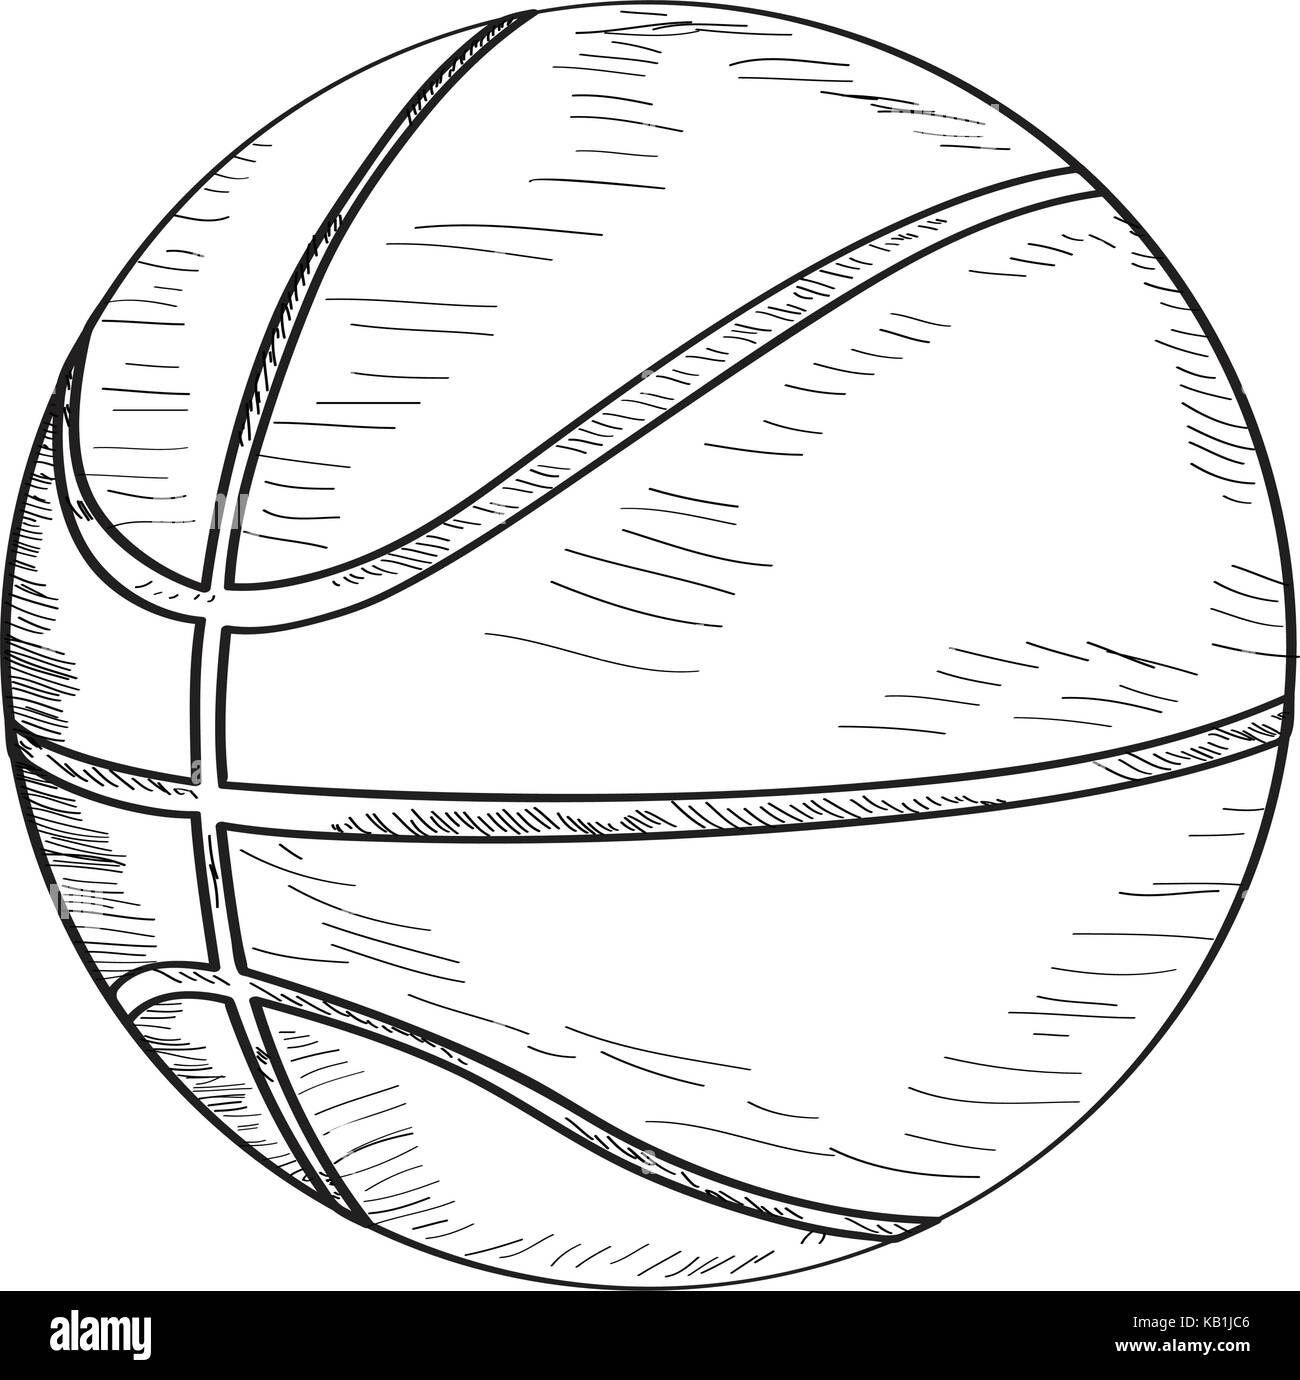 Skizze eines Basketball Ball Stock Vektor